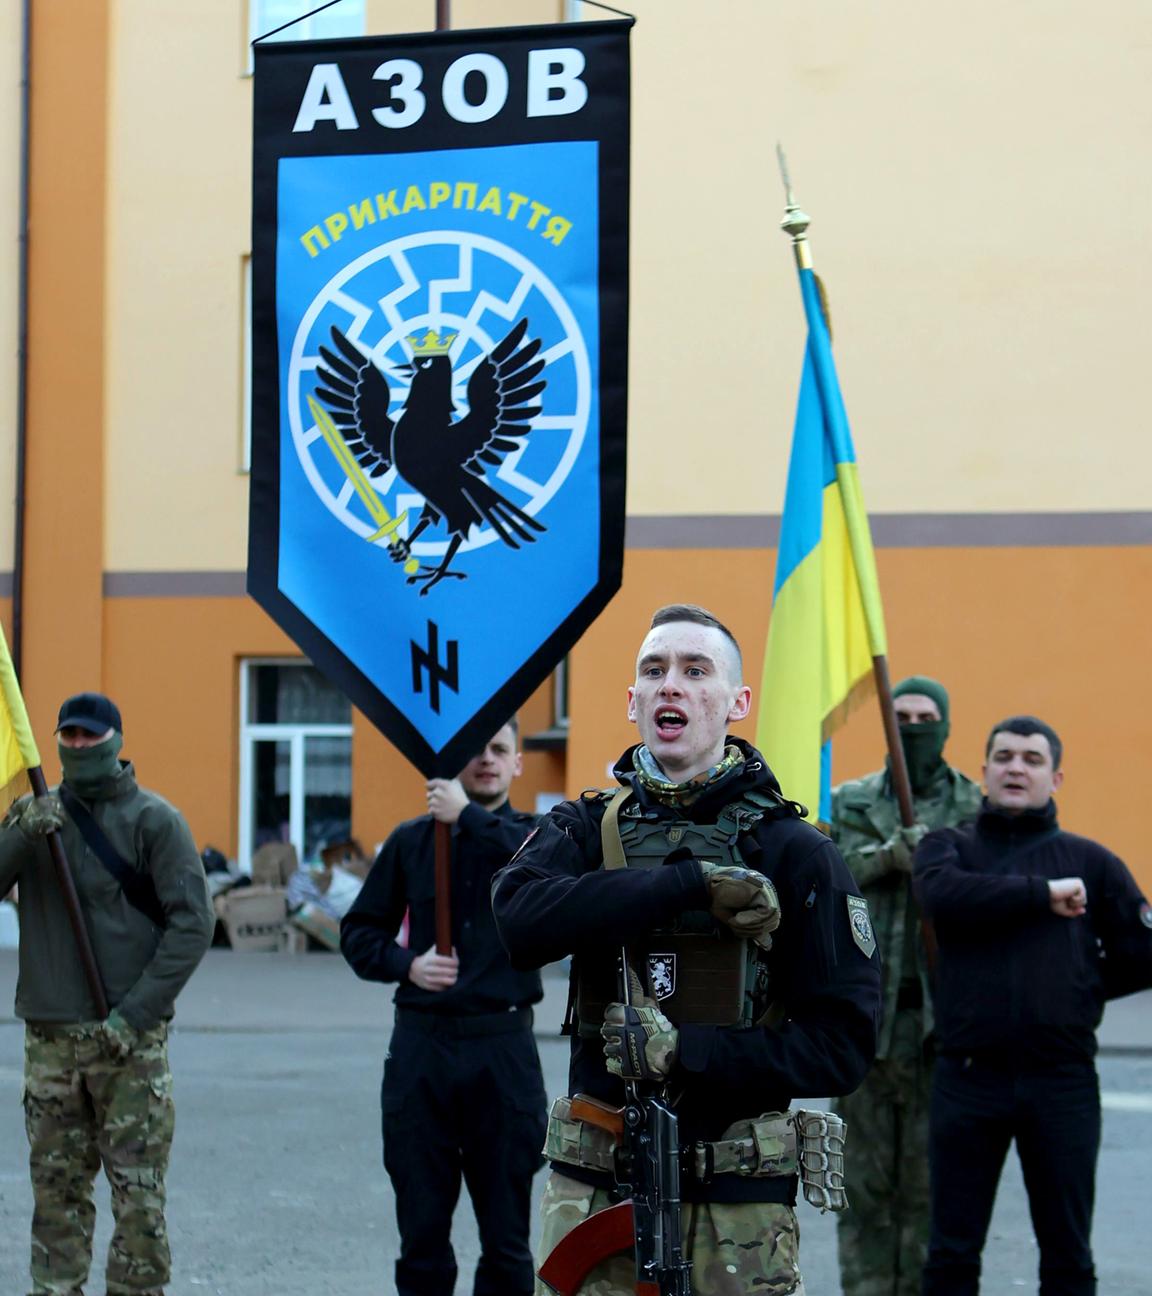 Mitglieder der in die Nationalgarde eingegliederten Regiments Asow-Prykarpattia nehmen mit Fahnen an einer Zeremonie teil, um dem ukrainischen Volk ihre Treue zu schwören.